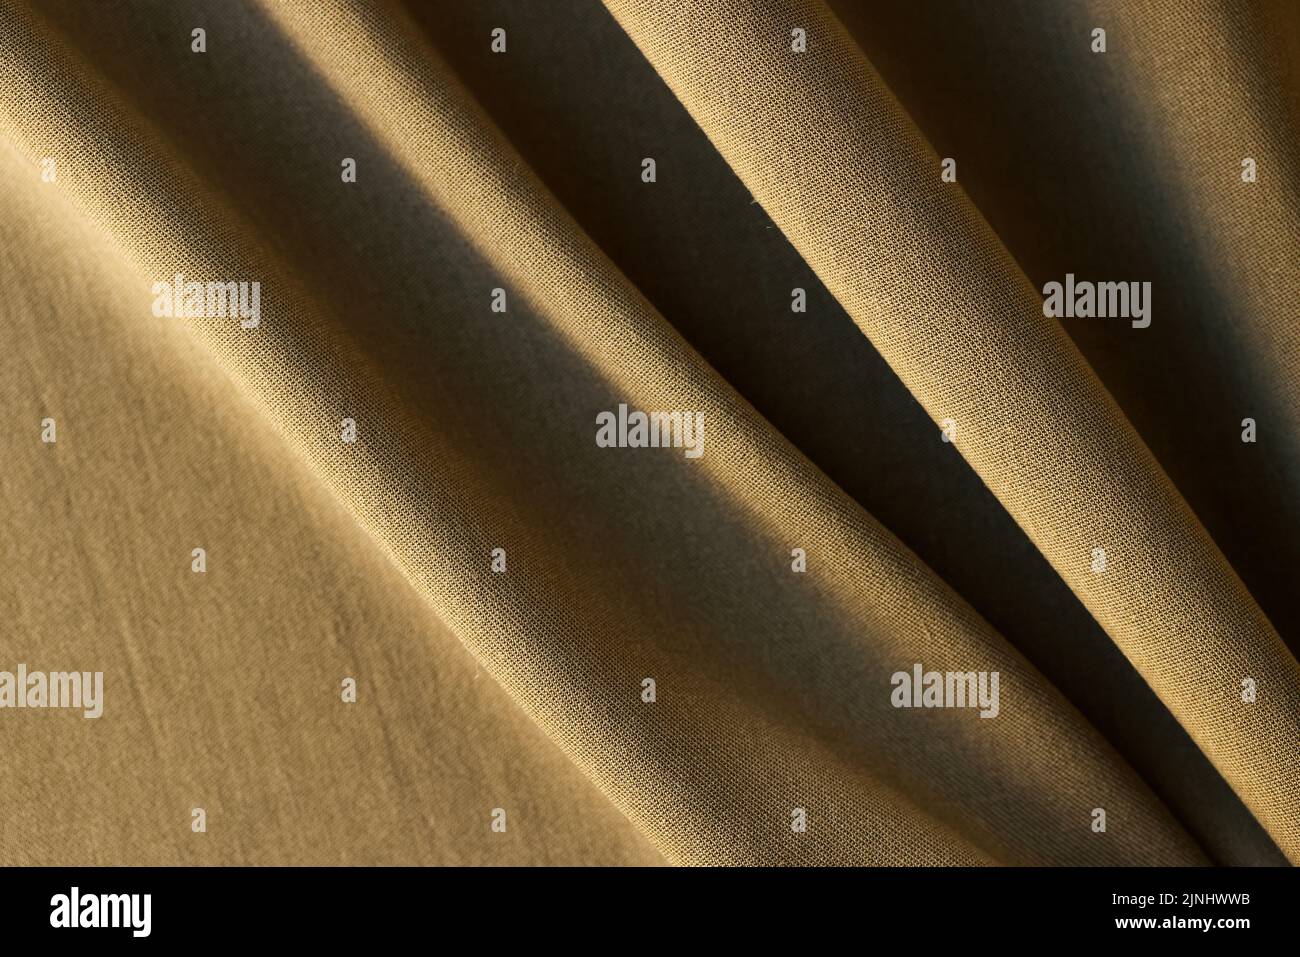 Muestra de tela marrón en pliegues para catálogo de tejidos Foto de stock